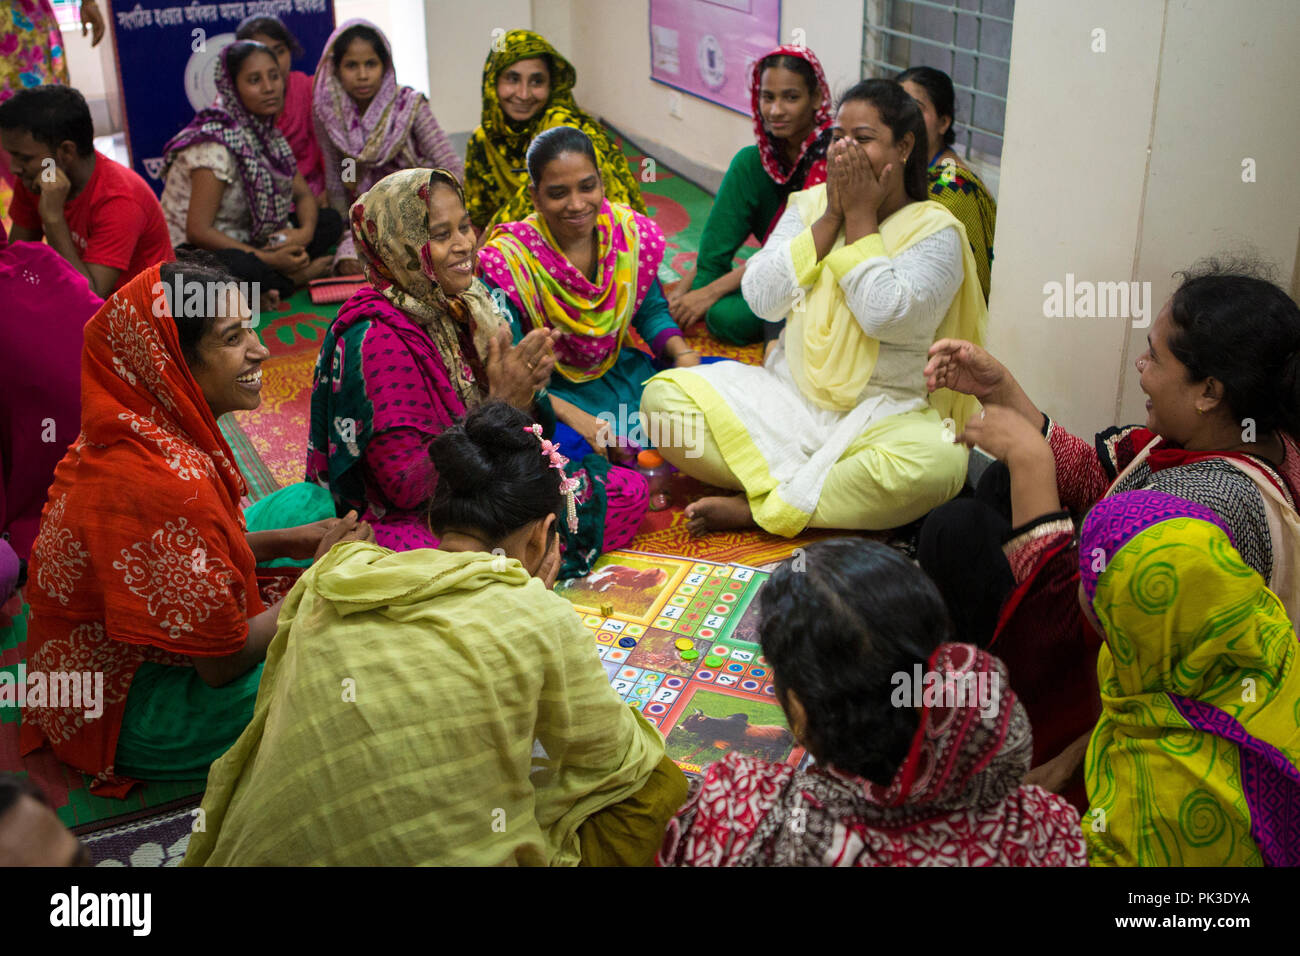 Indumento i lavoratori a ridere come essi giocare un gioco di bordo durante un workshop che si terrà a Dacca in Bangladesh. Foto Stock